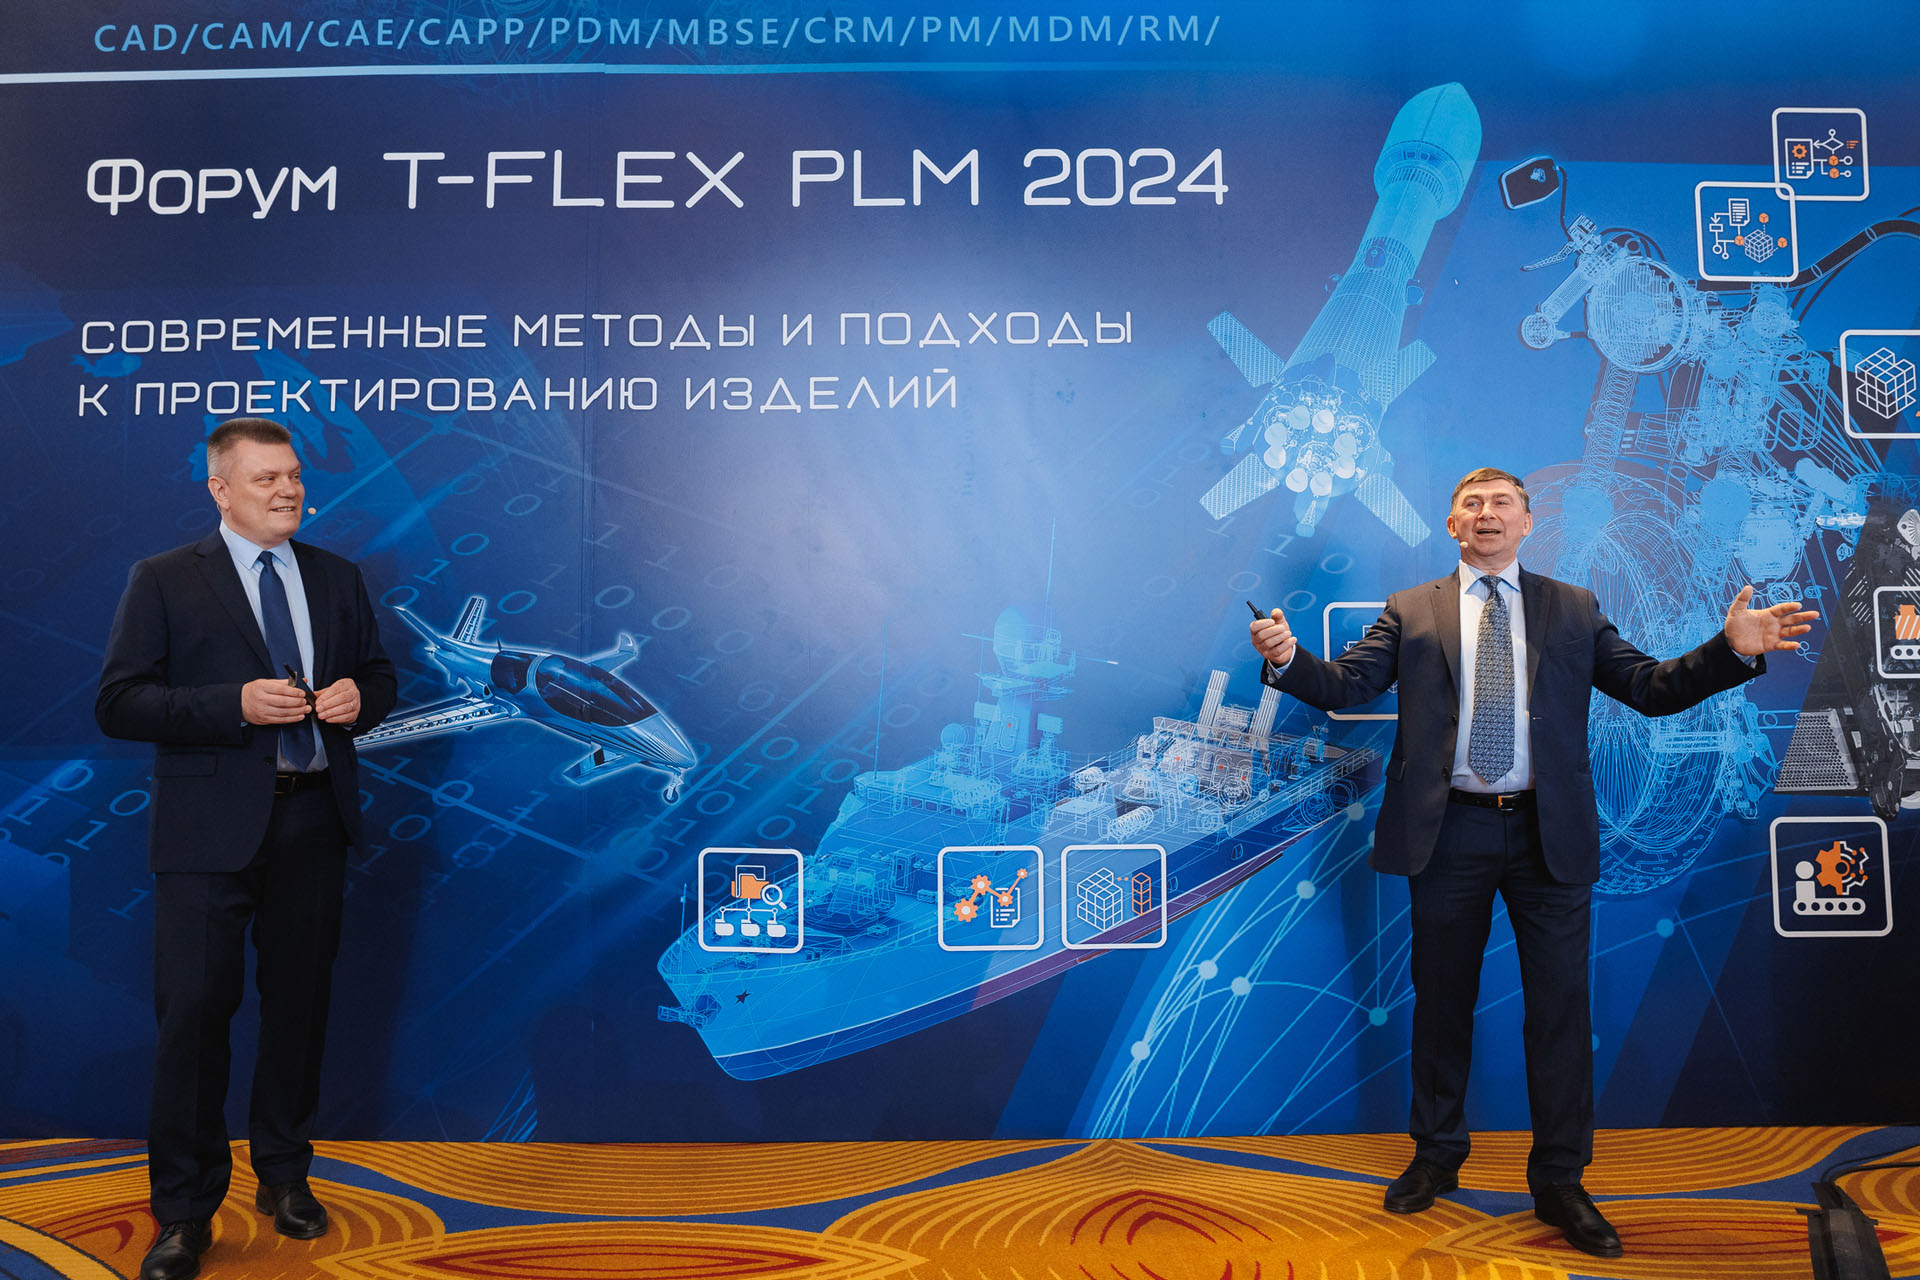  T-FLEX PLM 2024